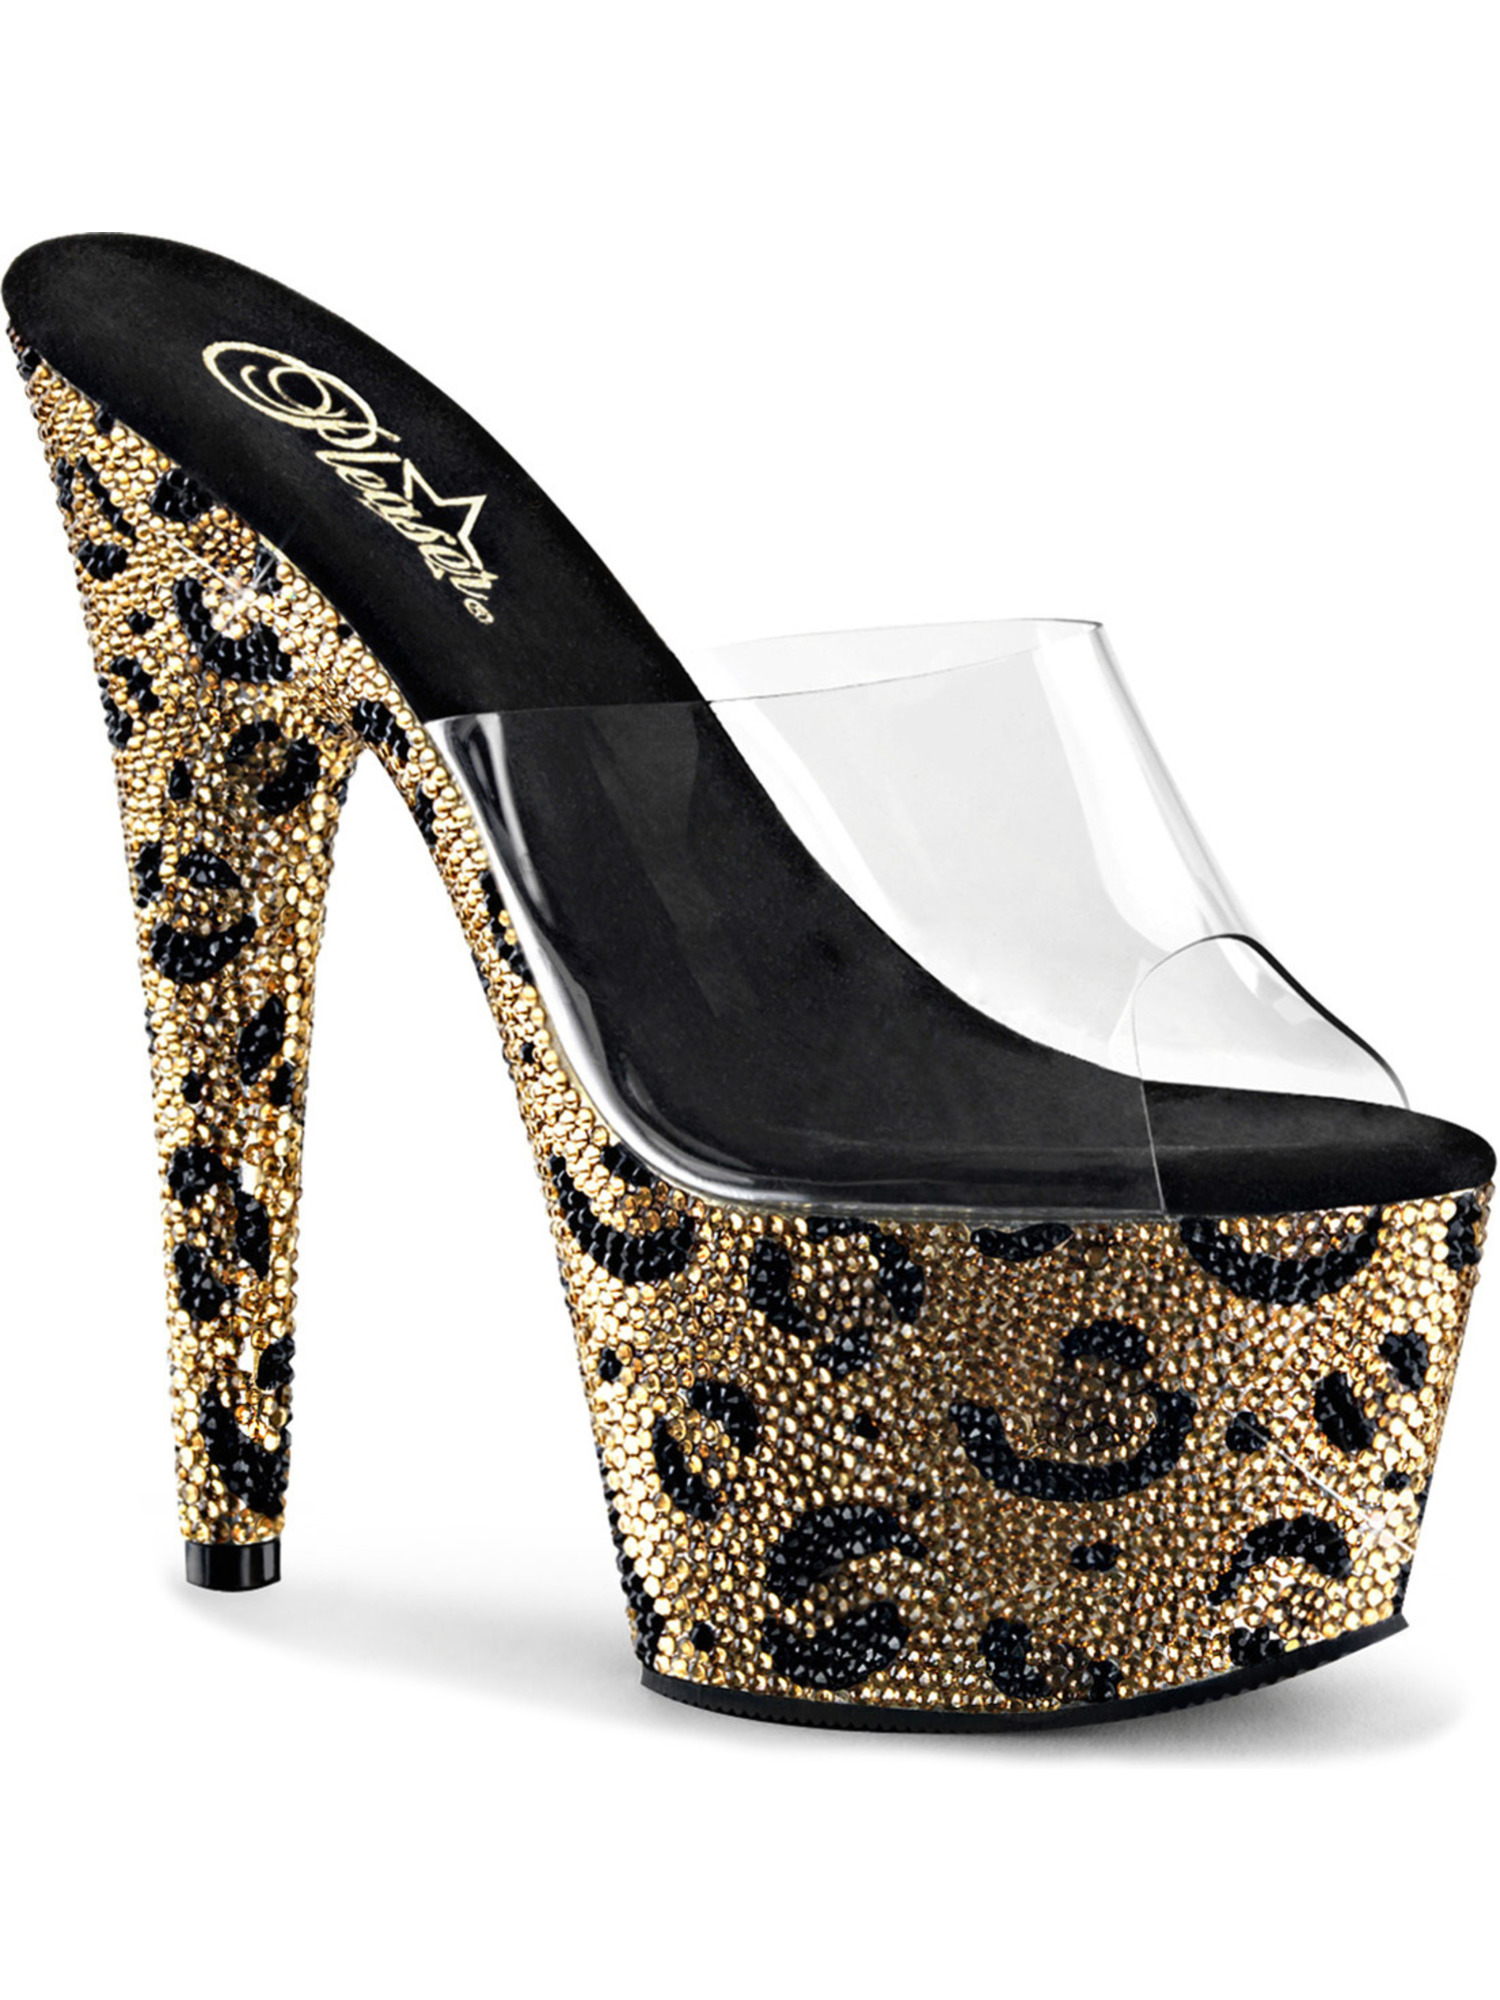 leopard print shoes size 7